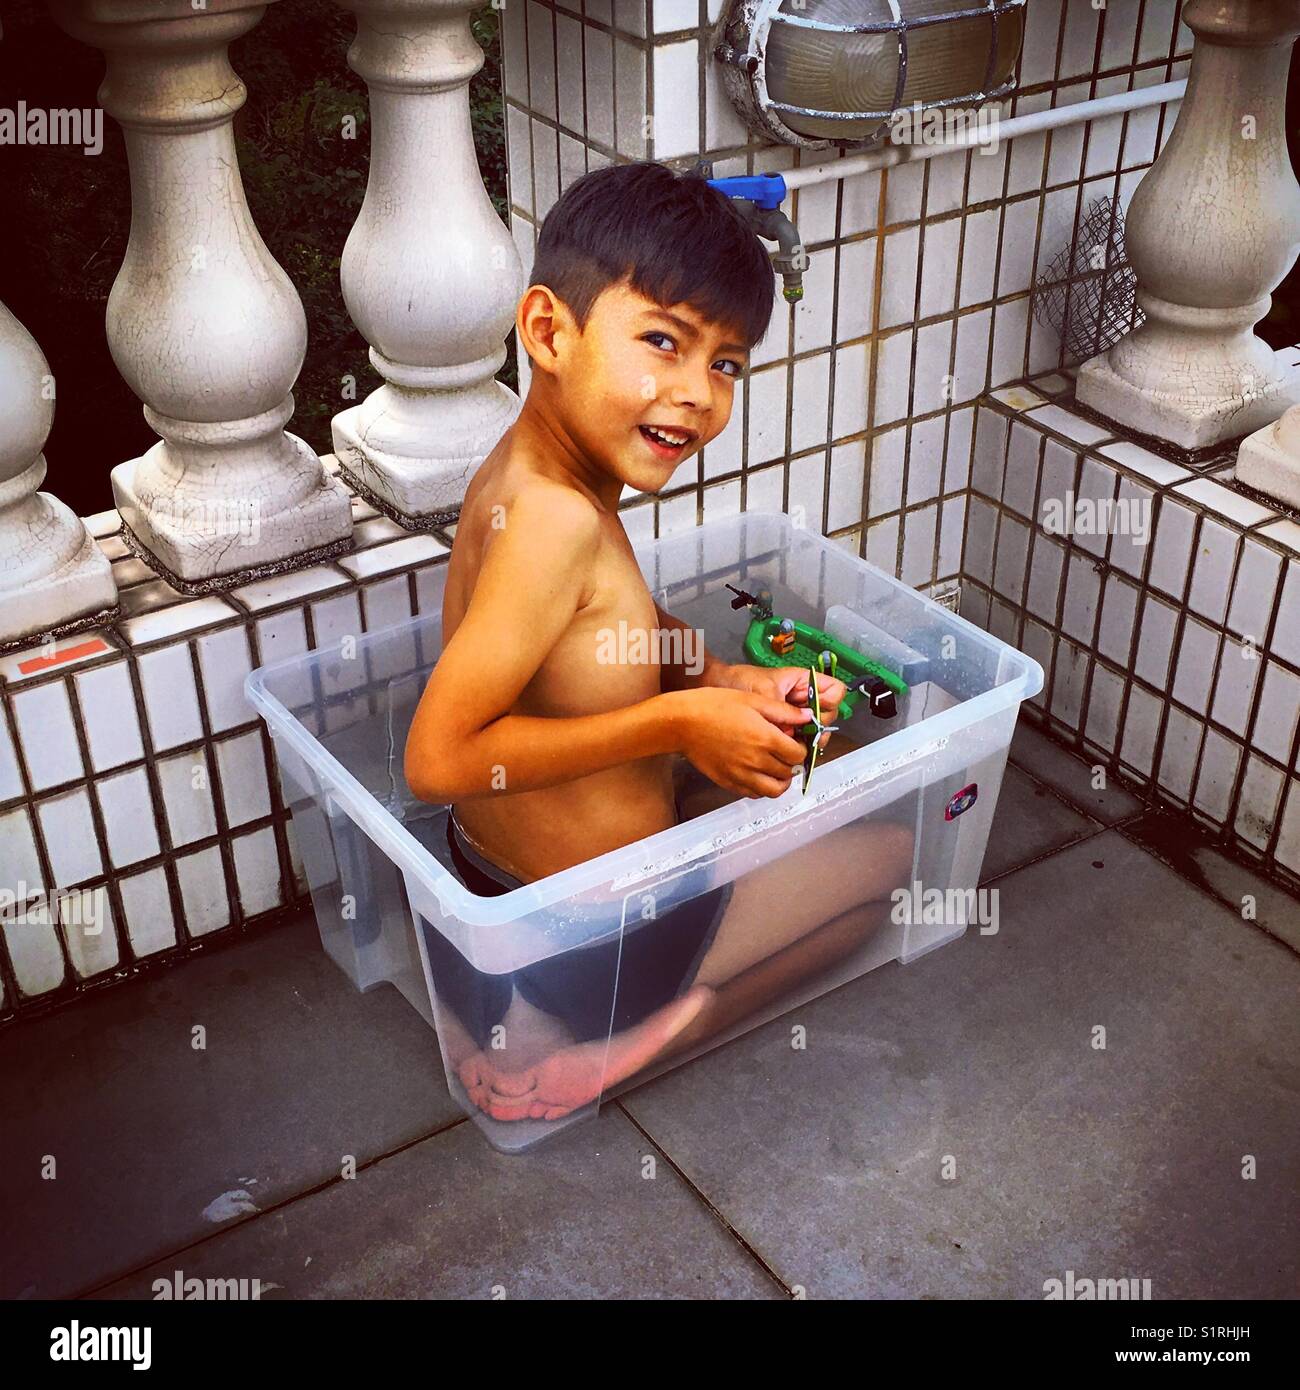 Jeune garçon dans une boîte en plastique transparent comme une piscine Banque D'Images